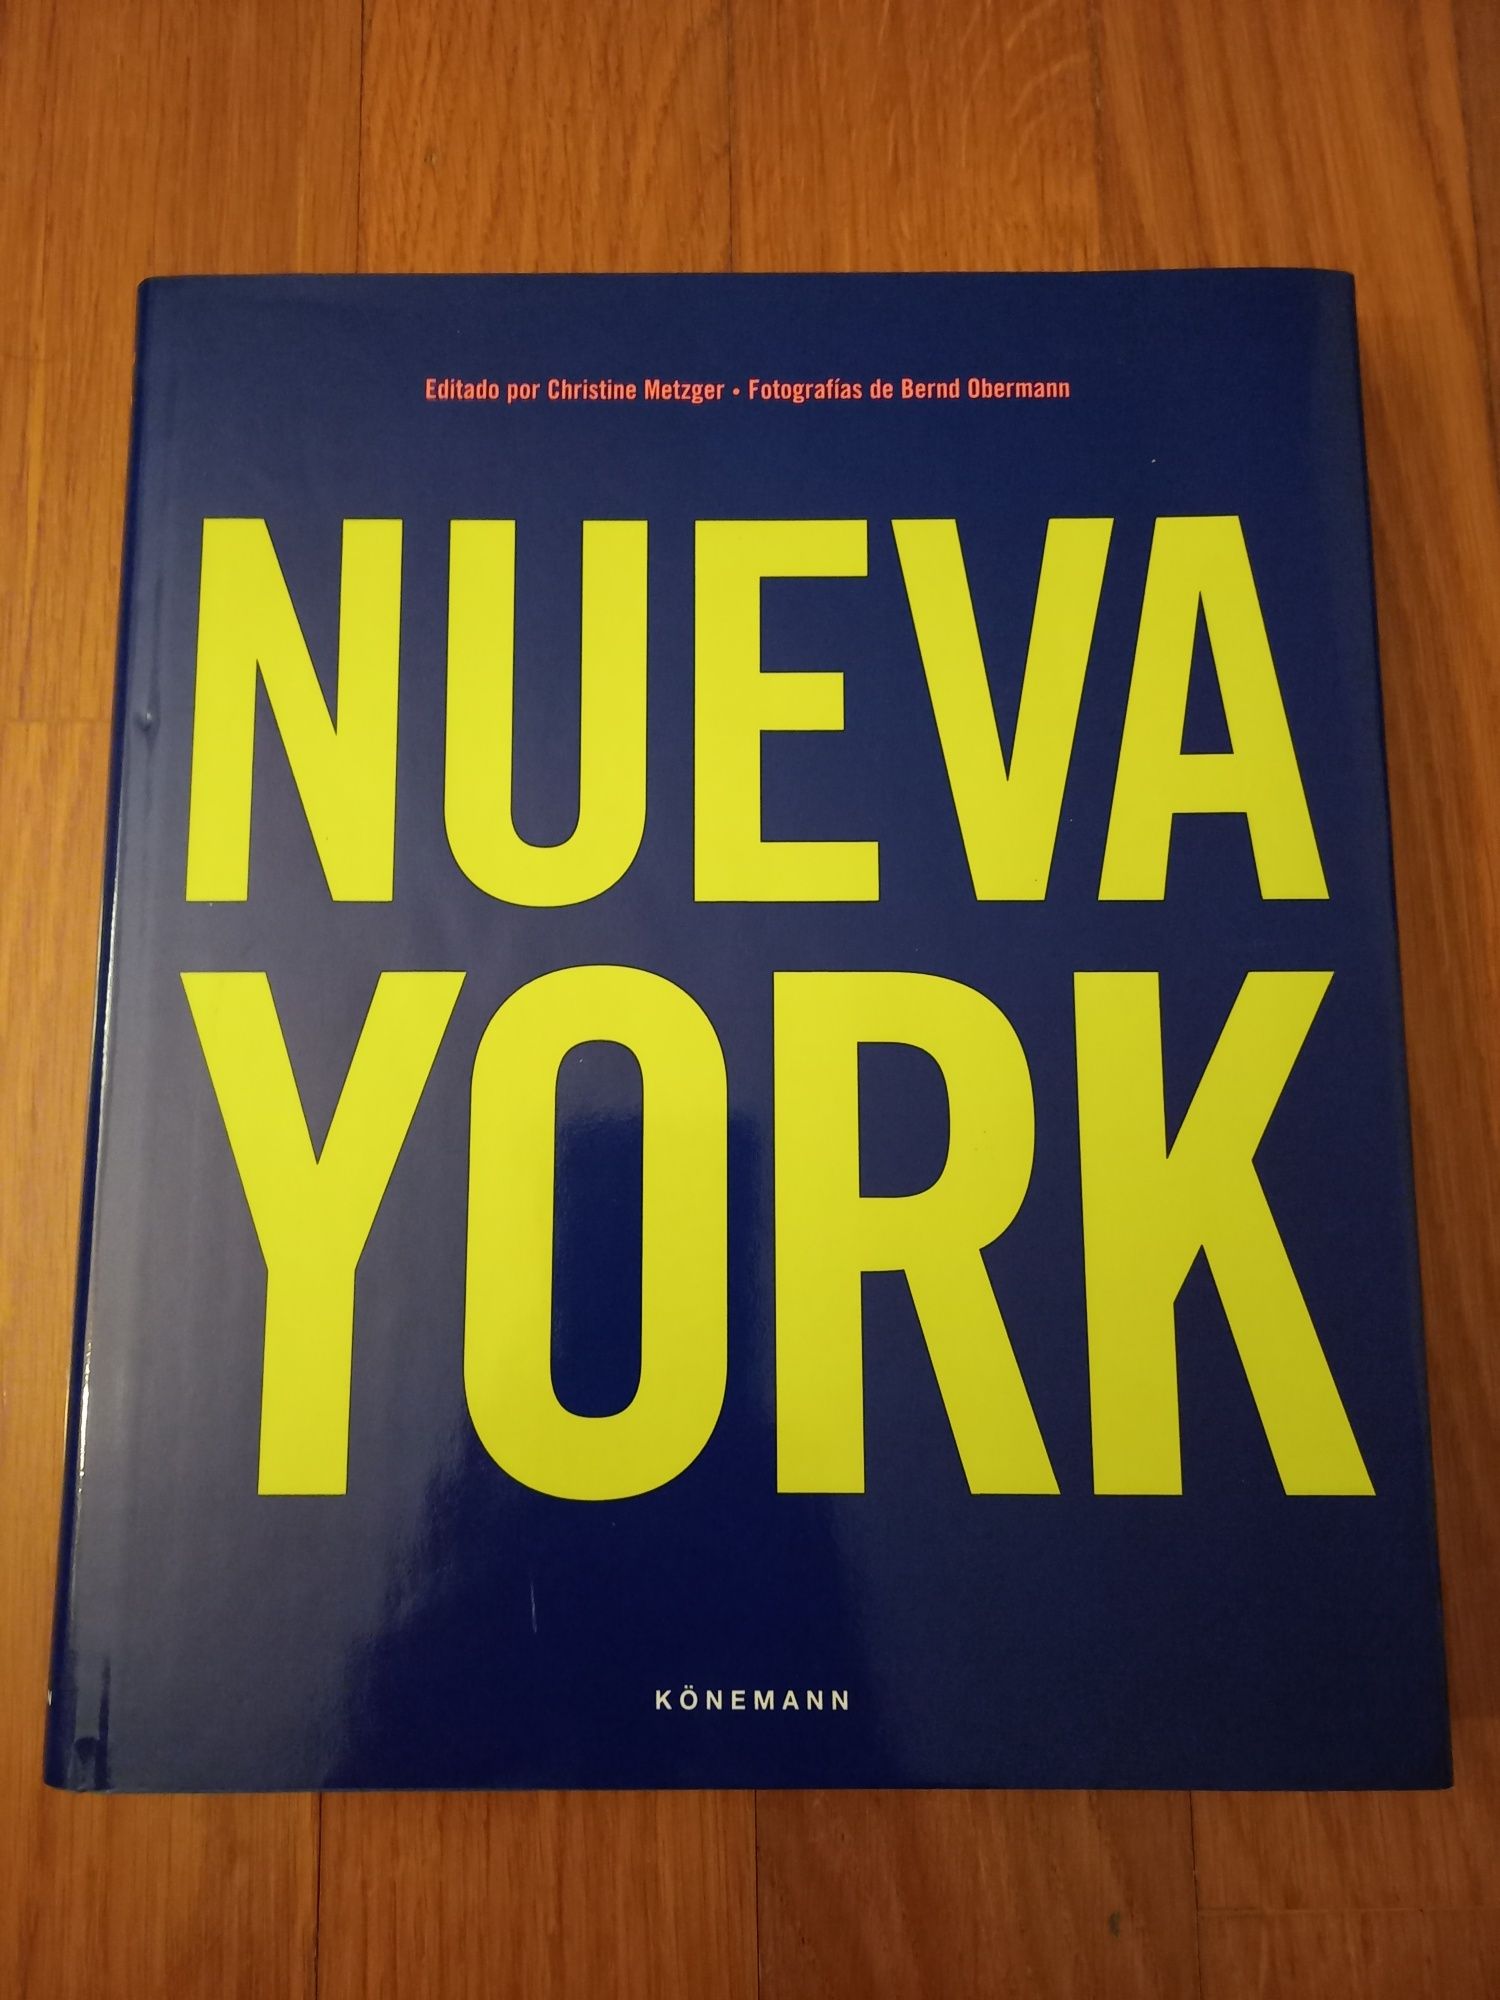 Livro Nueva York - Edição Konemann